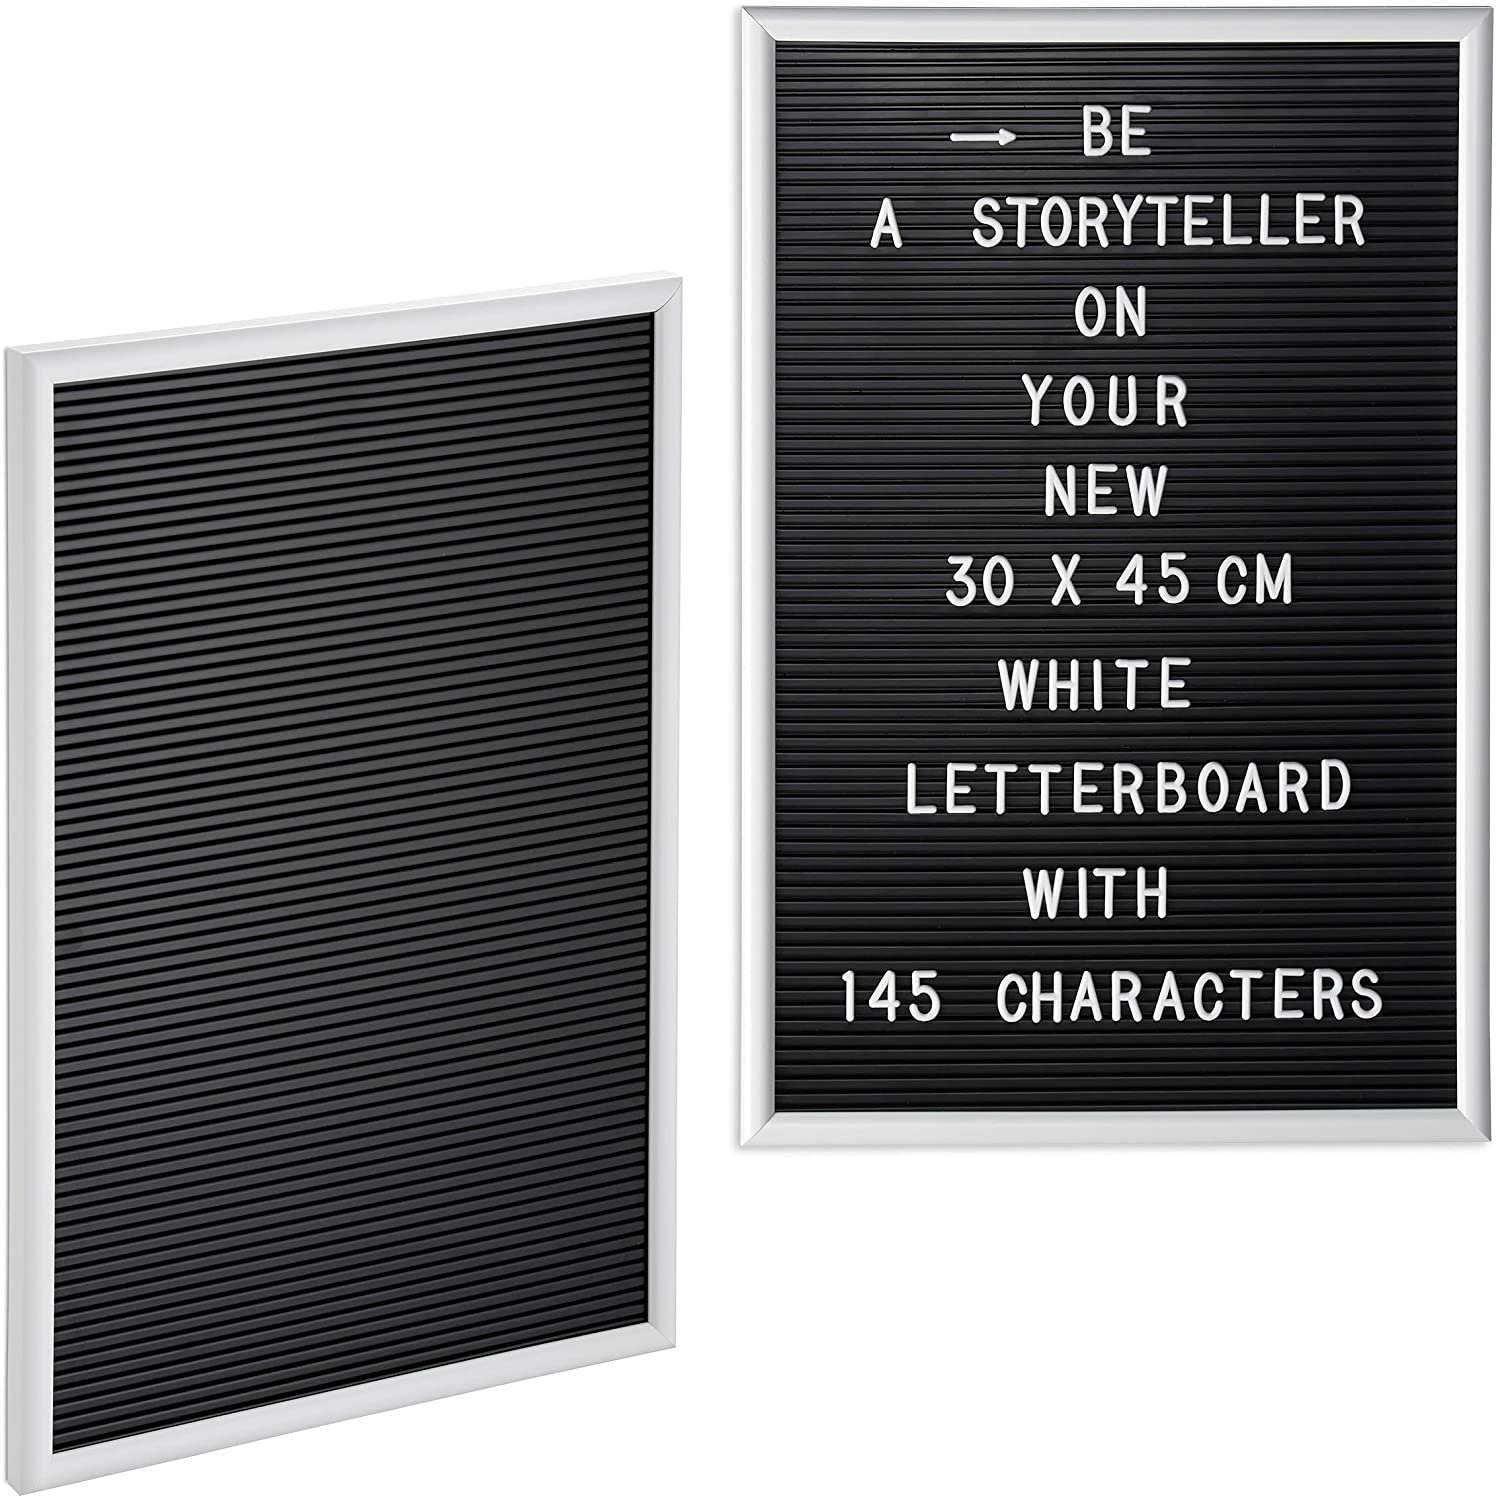 Relaxdays 2 x Letterboard, je 145 Buchstaben, Zahlen, Sonderzeichen, 45x30 cm, Buchstabentafel zum Stecken, Kunststoff, weiß